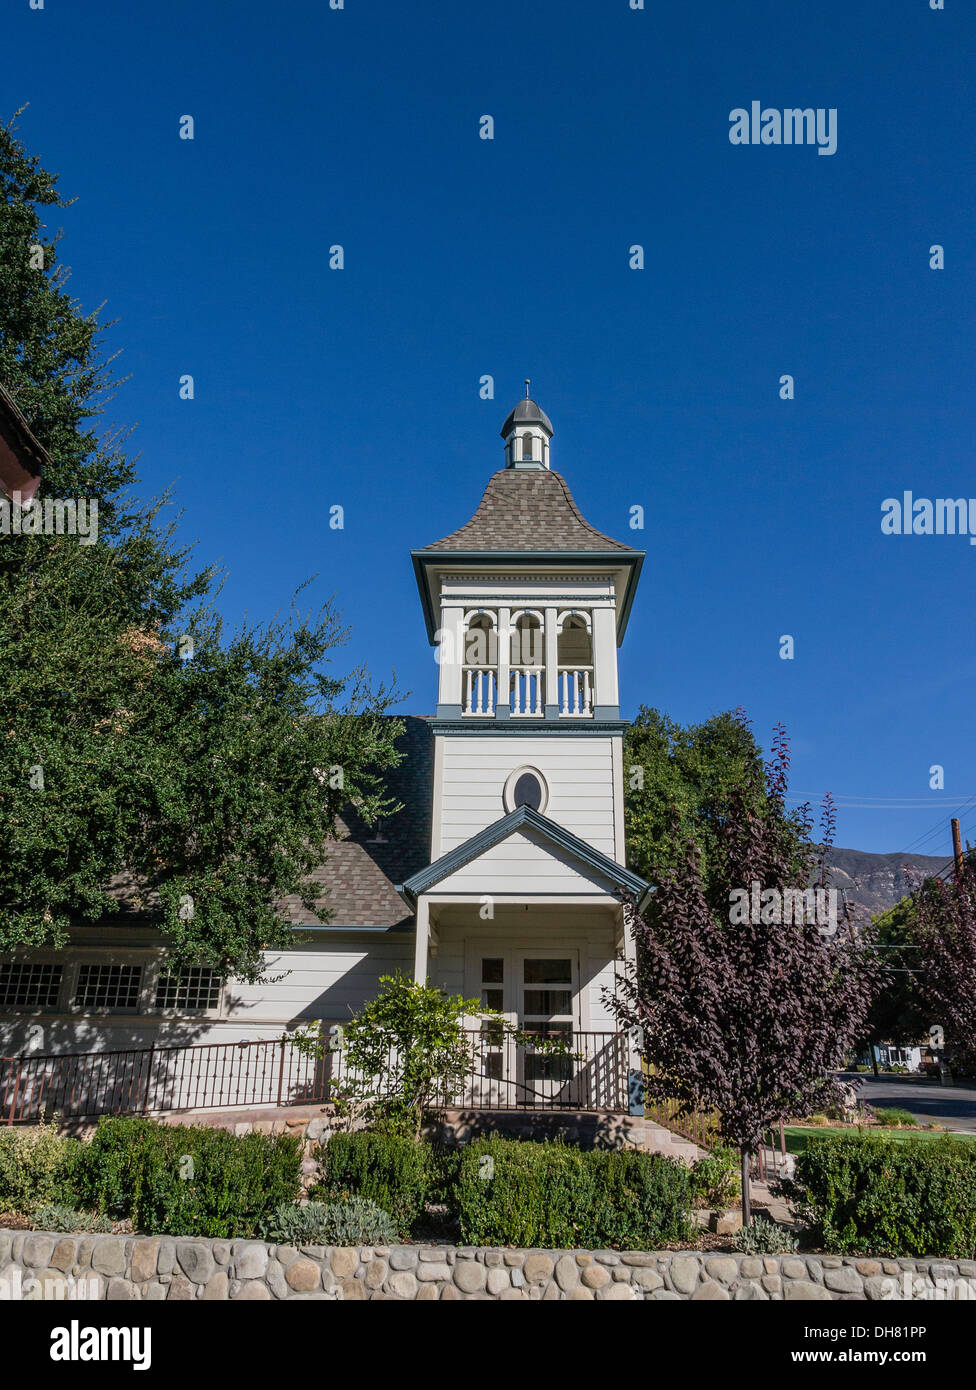 Détail de beffroi de la première église à Ojai, en Californie. Construit à l'origine par une congrégation presbytérienne. Banque D'Images